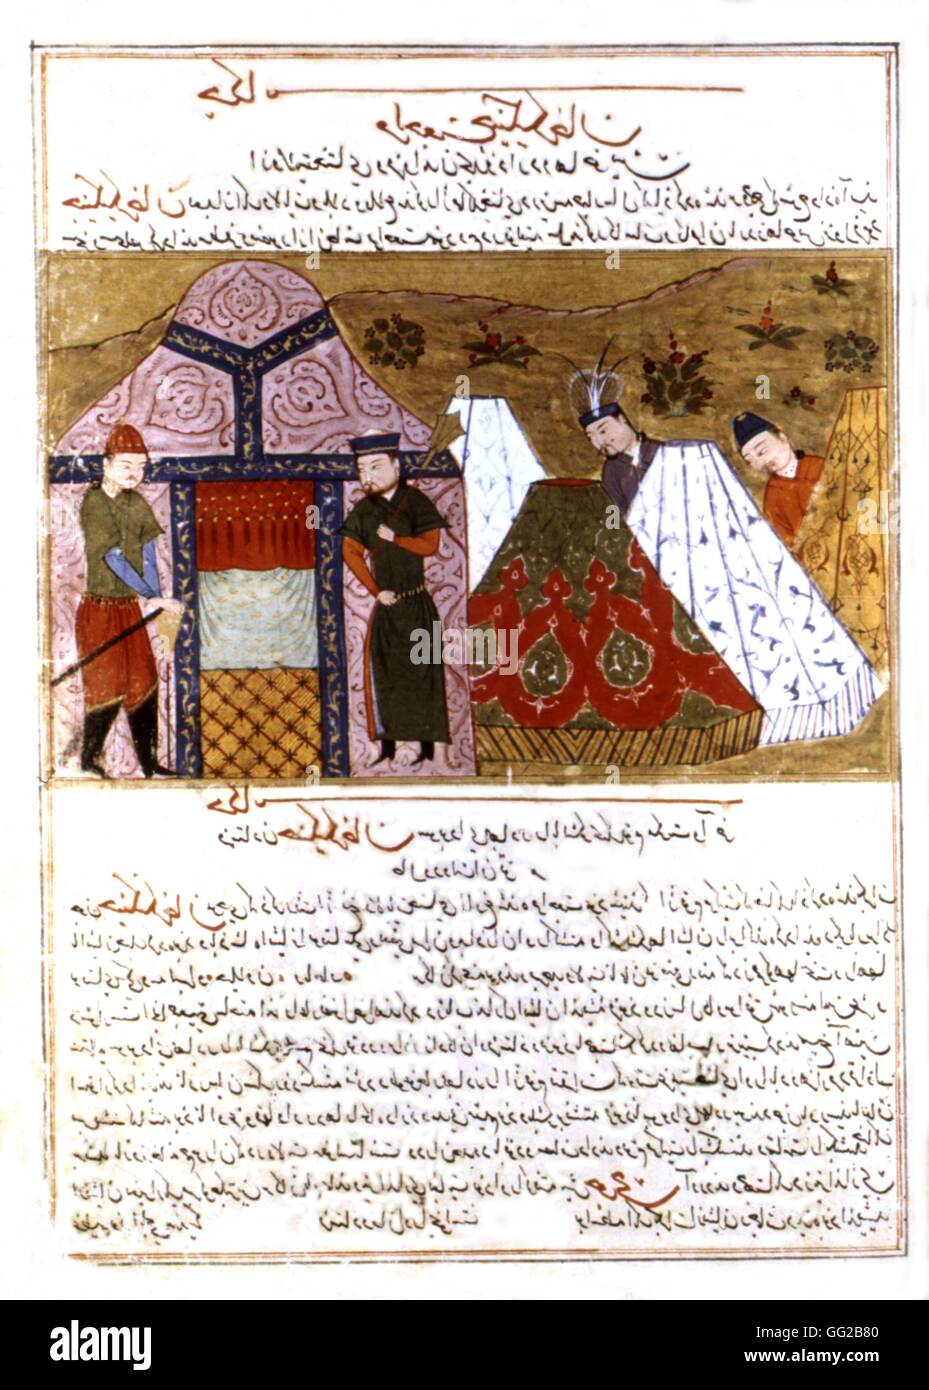 El persa manuscrito ilustrado con 106 pinturas: 'Jami'al Tawarikh' de Rachid ad-Dîn (Historia de los mongoles). Genghis Khan entre las carpas. La escuela persa del siglo XIV. Foto de stock